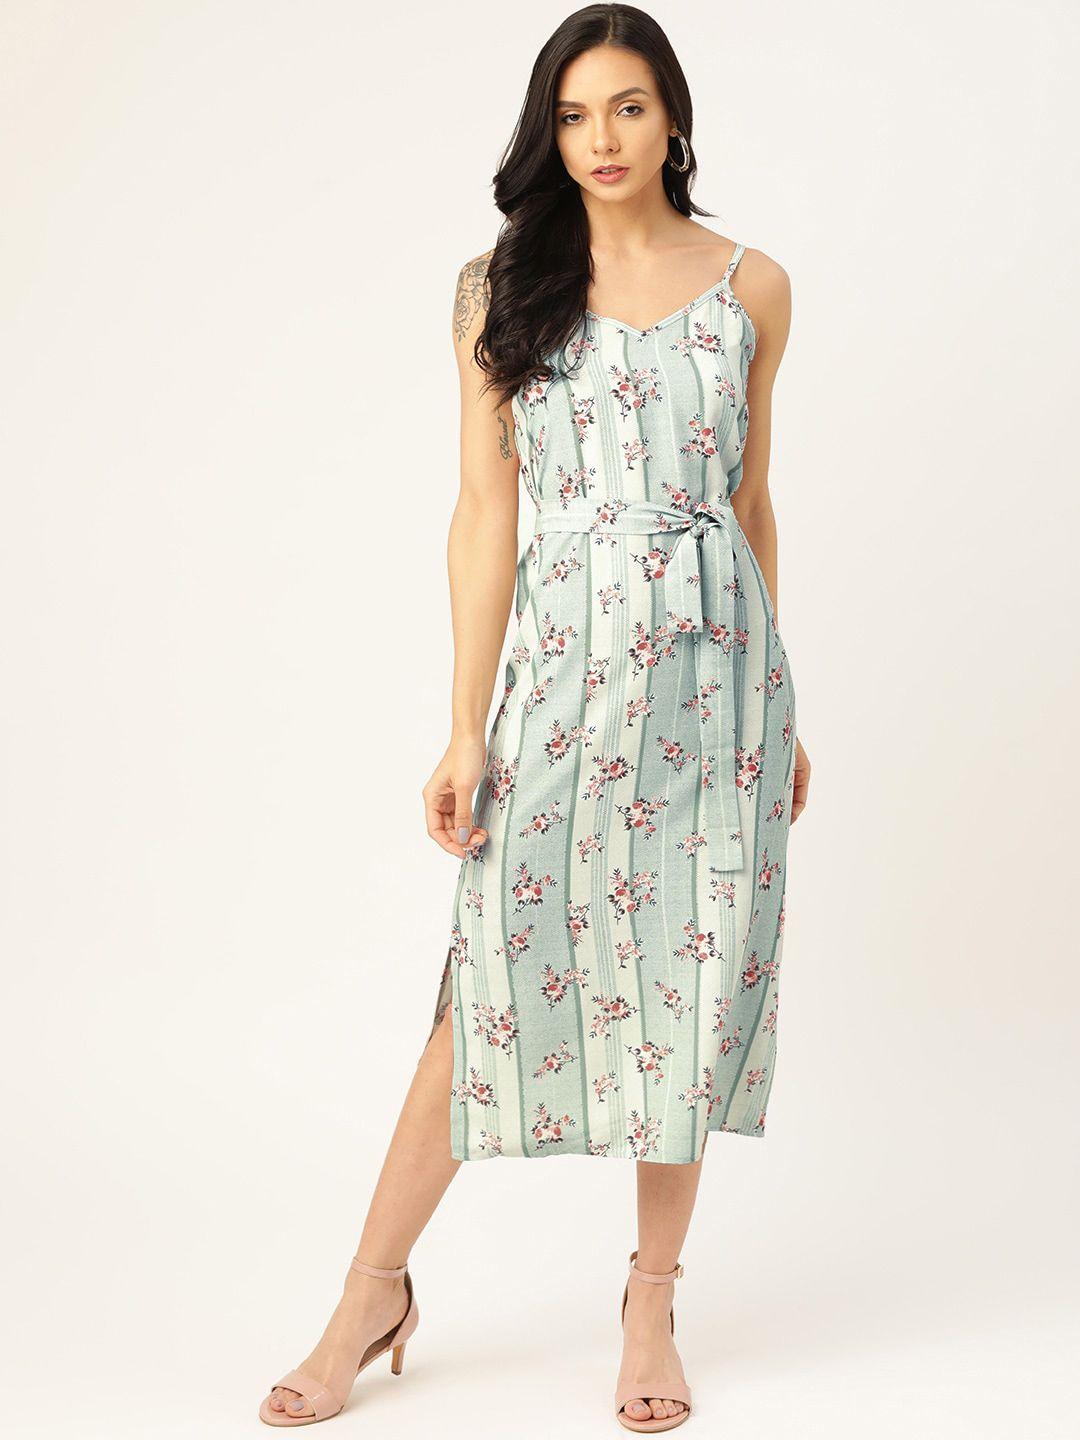 sangria shoulder straps floral printed a-line dress with belt